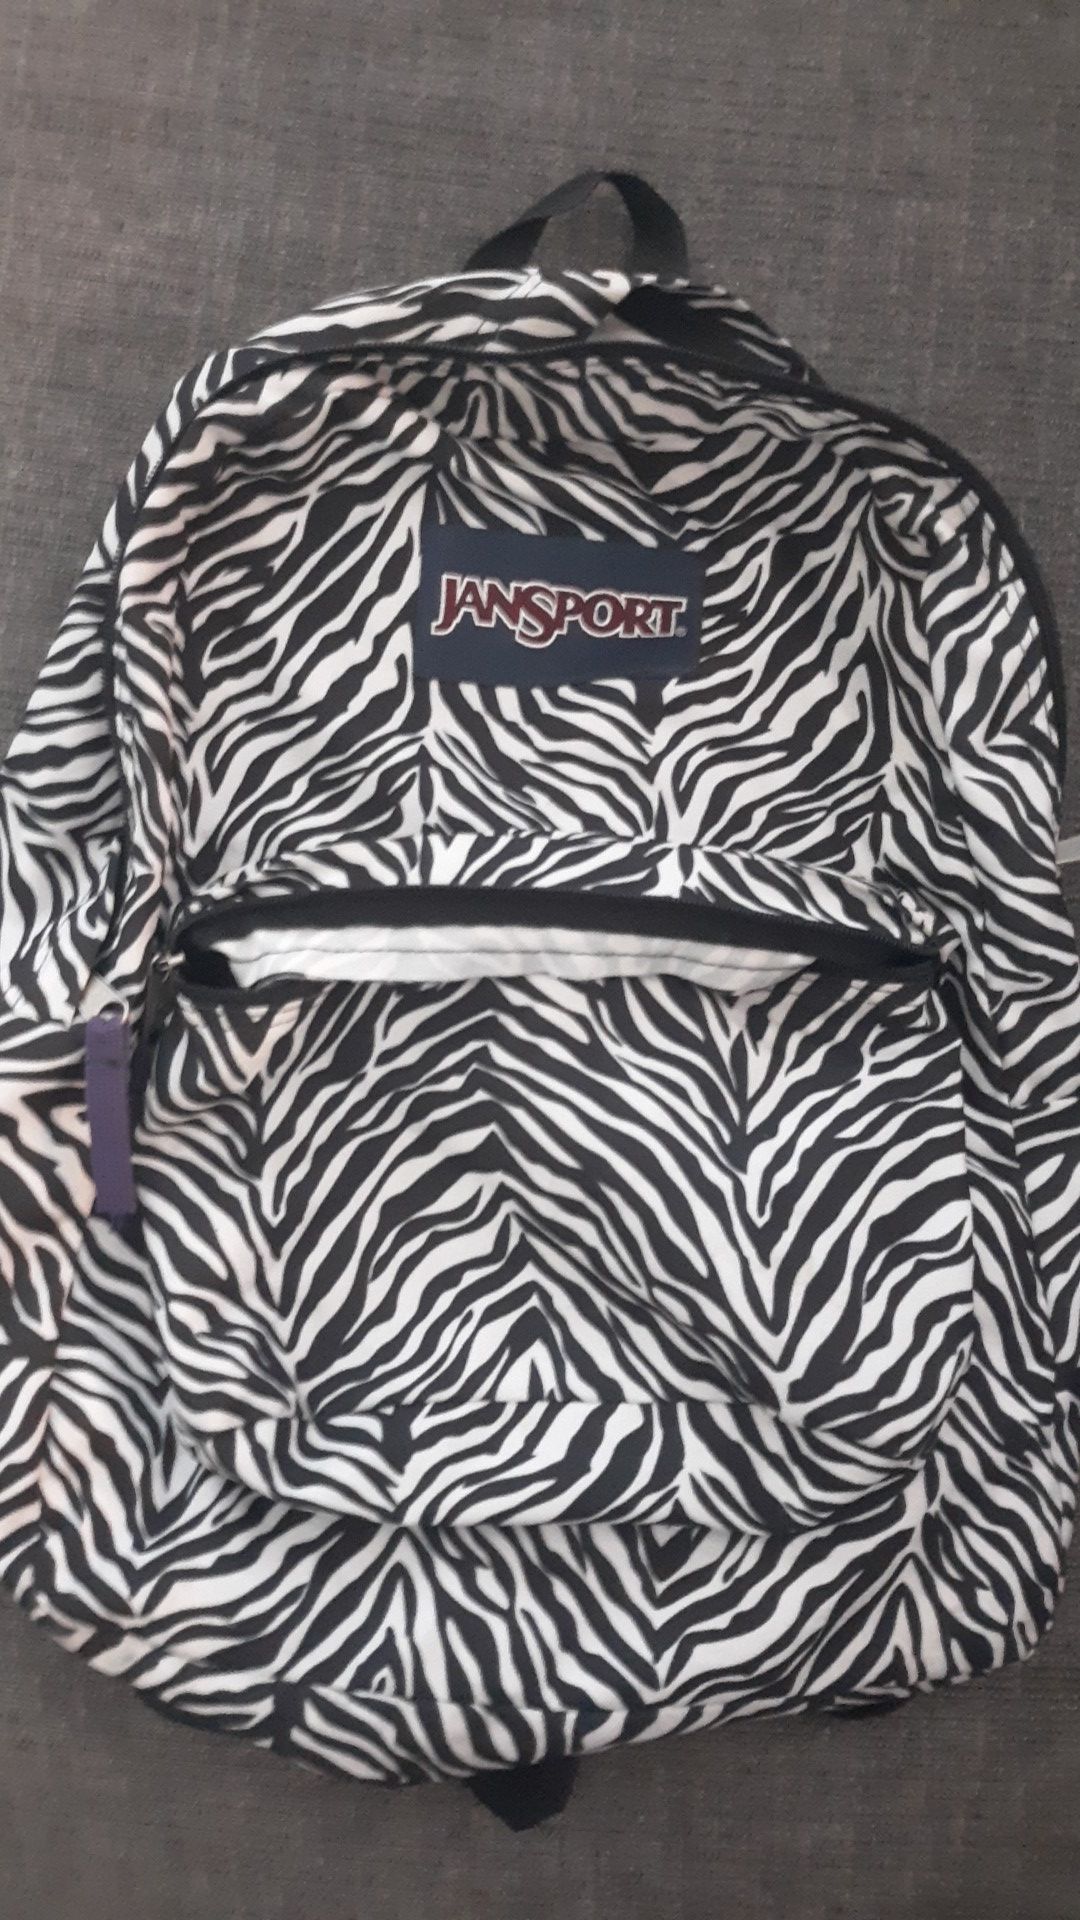 Like New Zebra Design Jansport Backpack